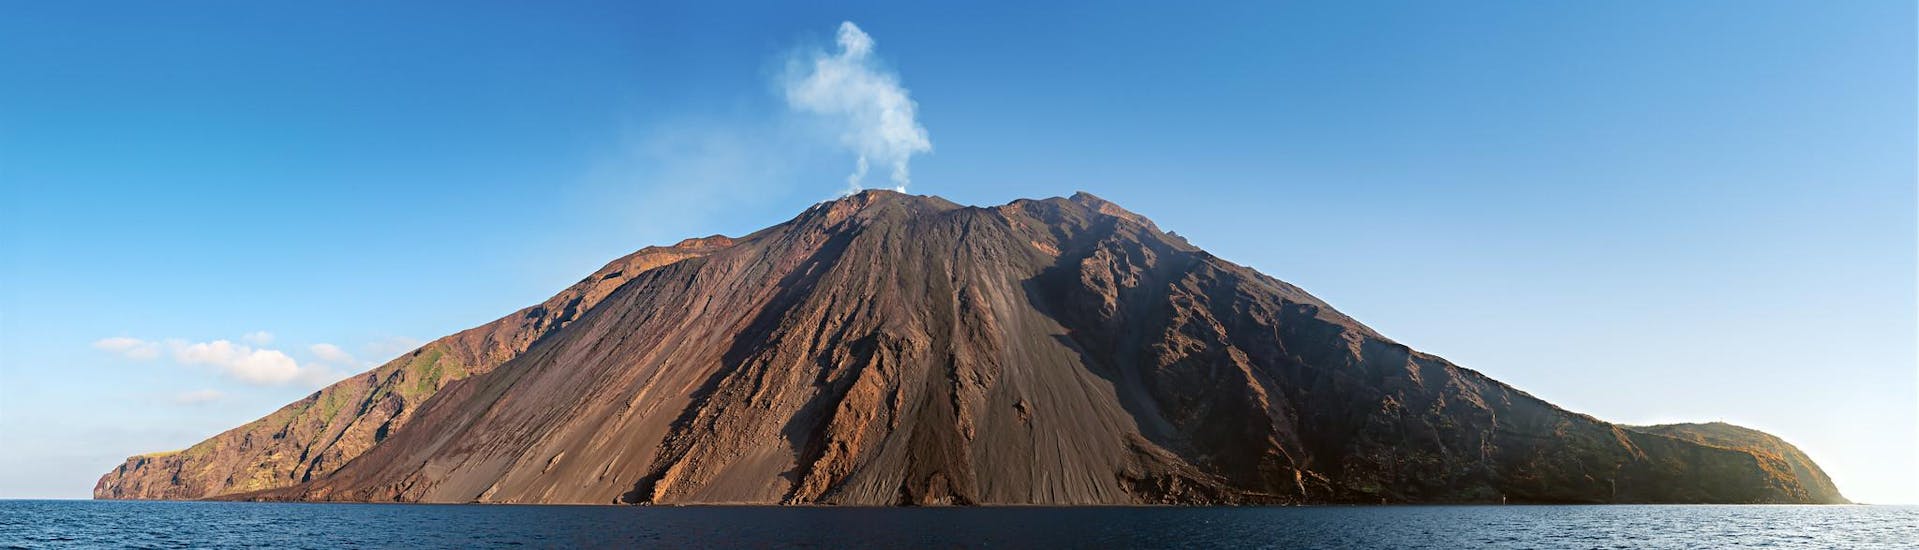 Haz una excursion al volcán o disfruta escalando el volcan hasta la final.